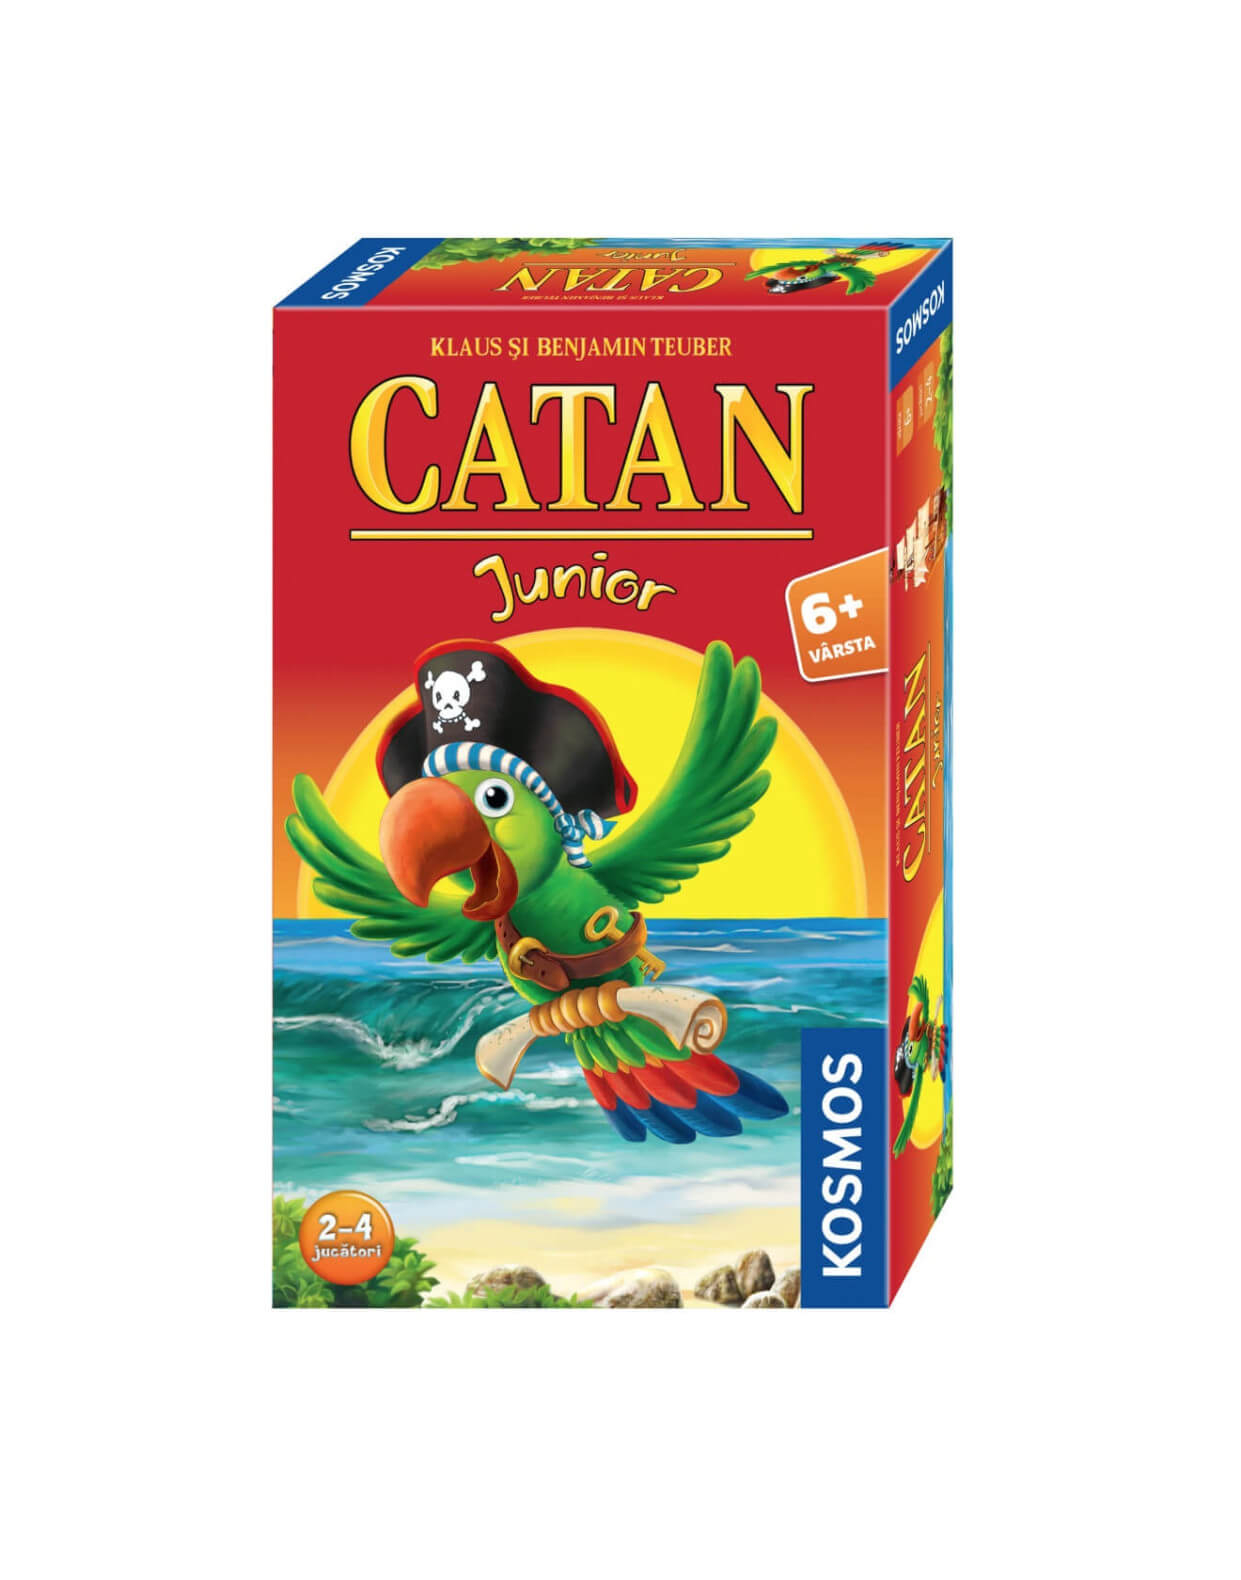 Catan - Junior Mini - joc pentru copii (RO)